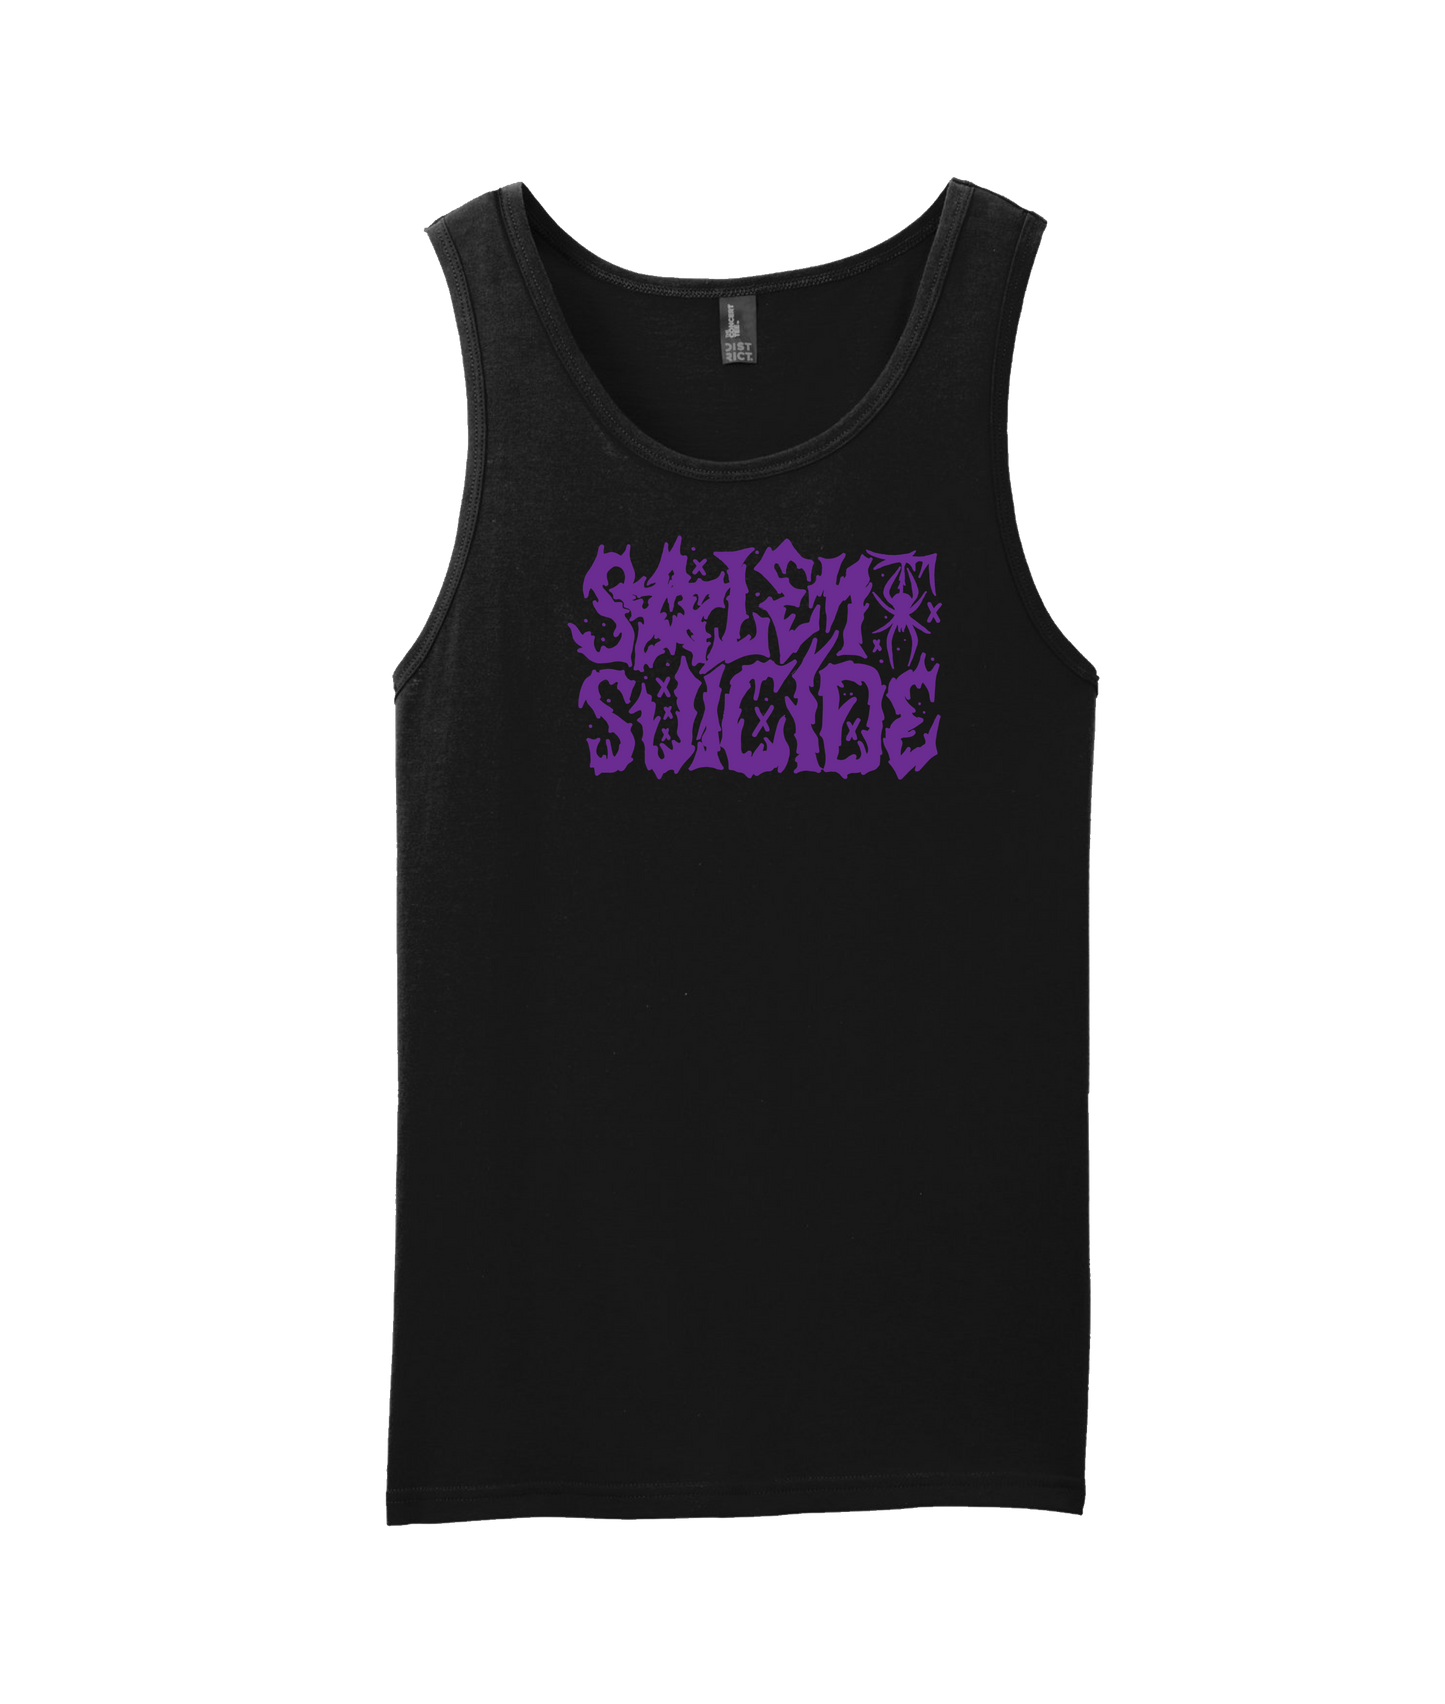 Salem Suicide - Logo Purple - Black Tank Top